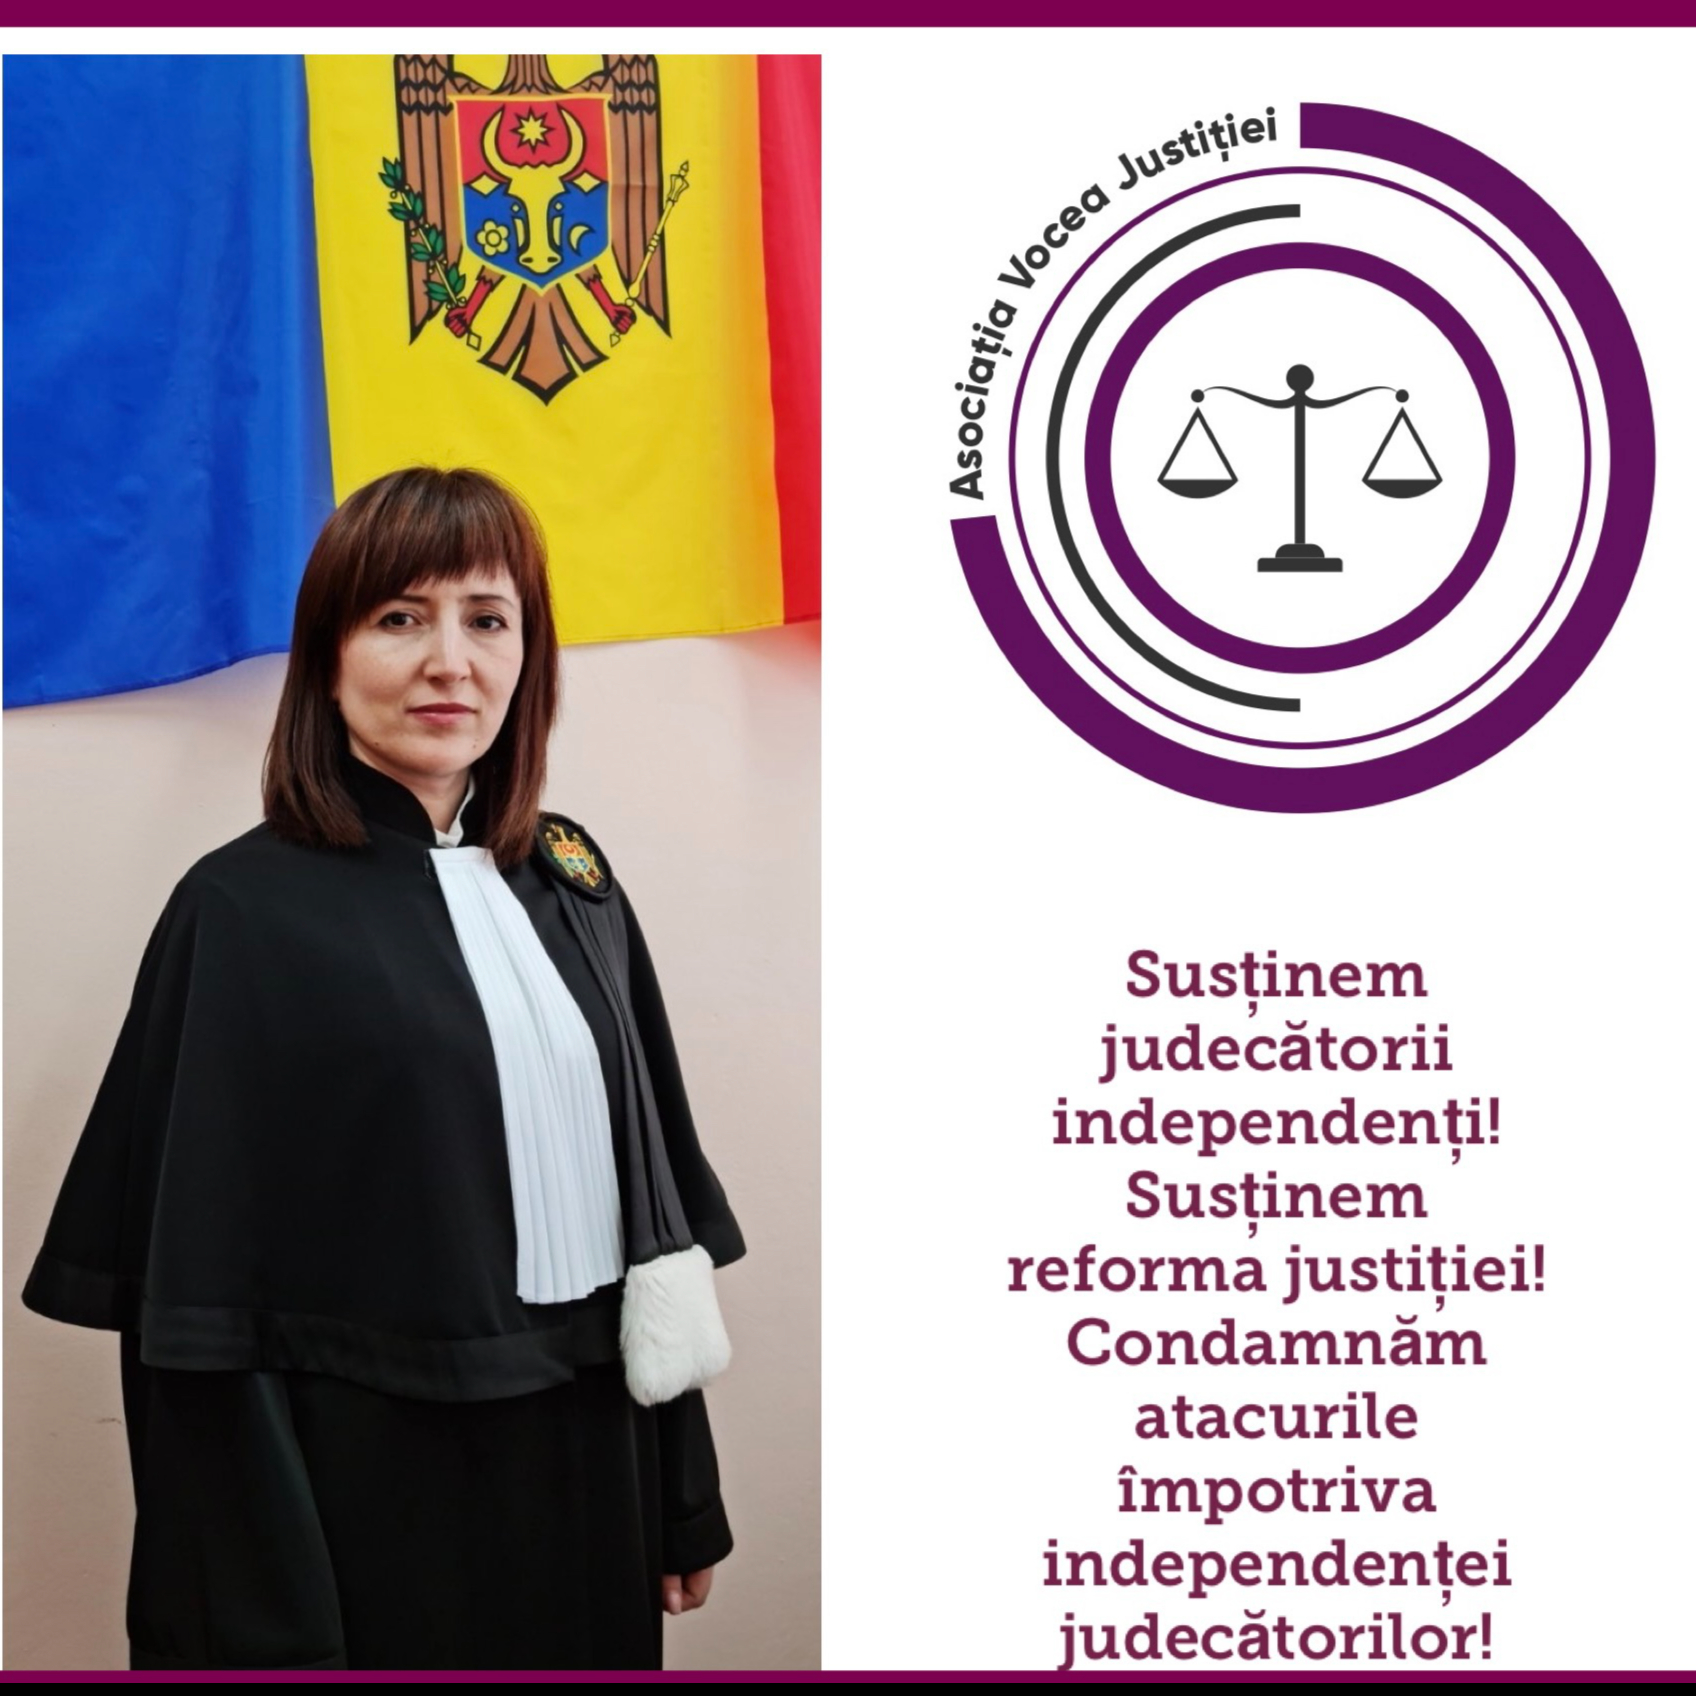 Atac grav împotriva reformei justiției. Solicităm susținerea comunității juridice naționale și internaționale.